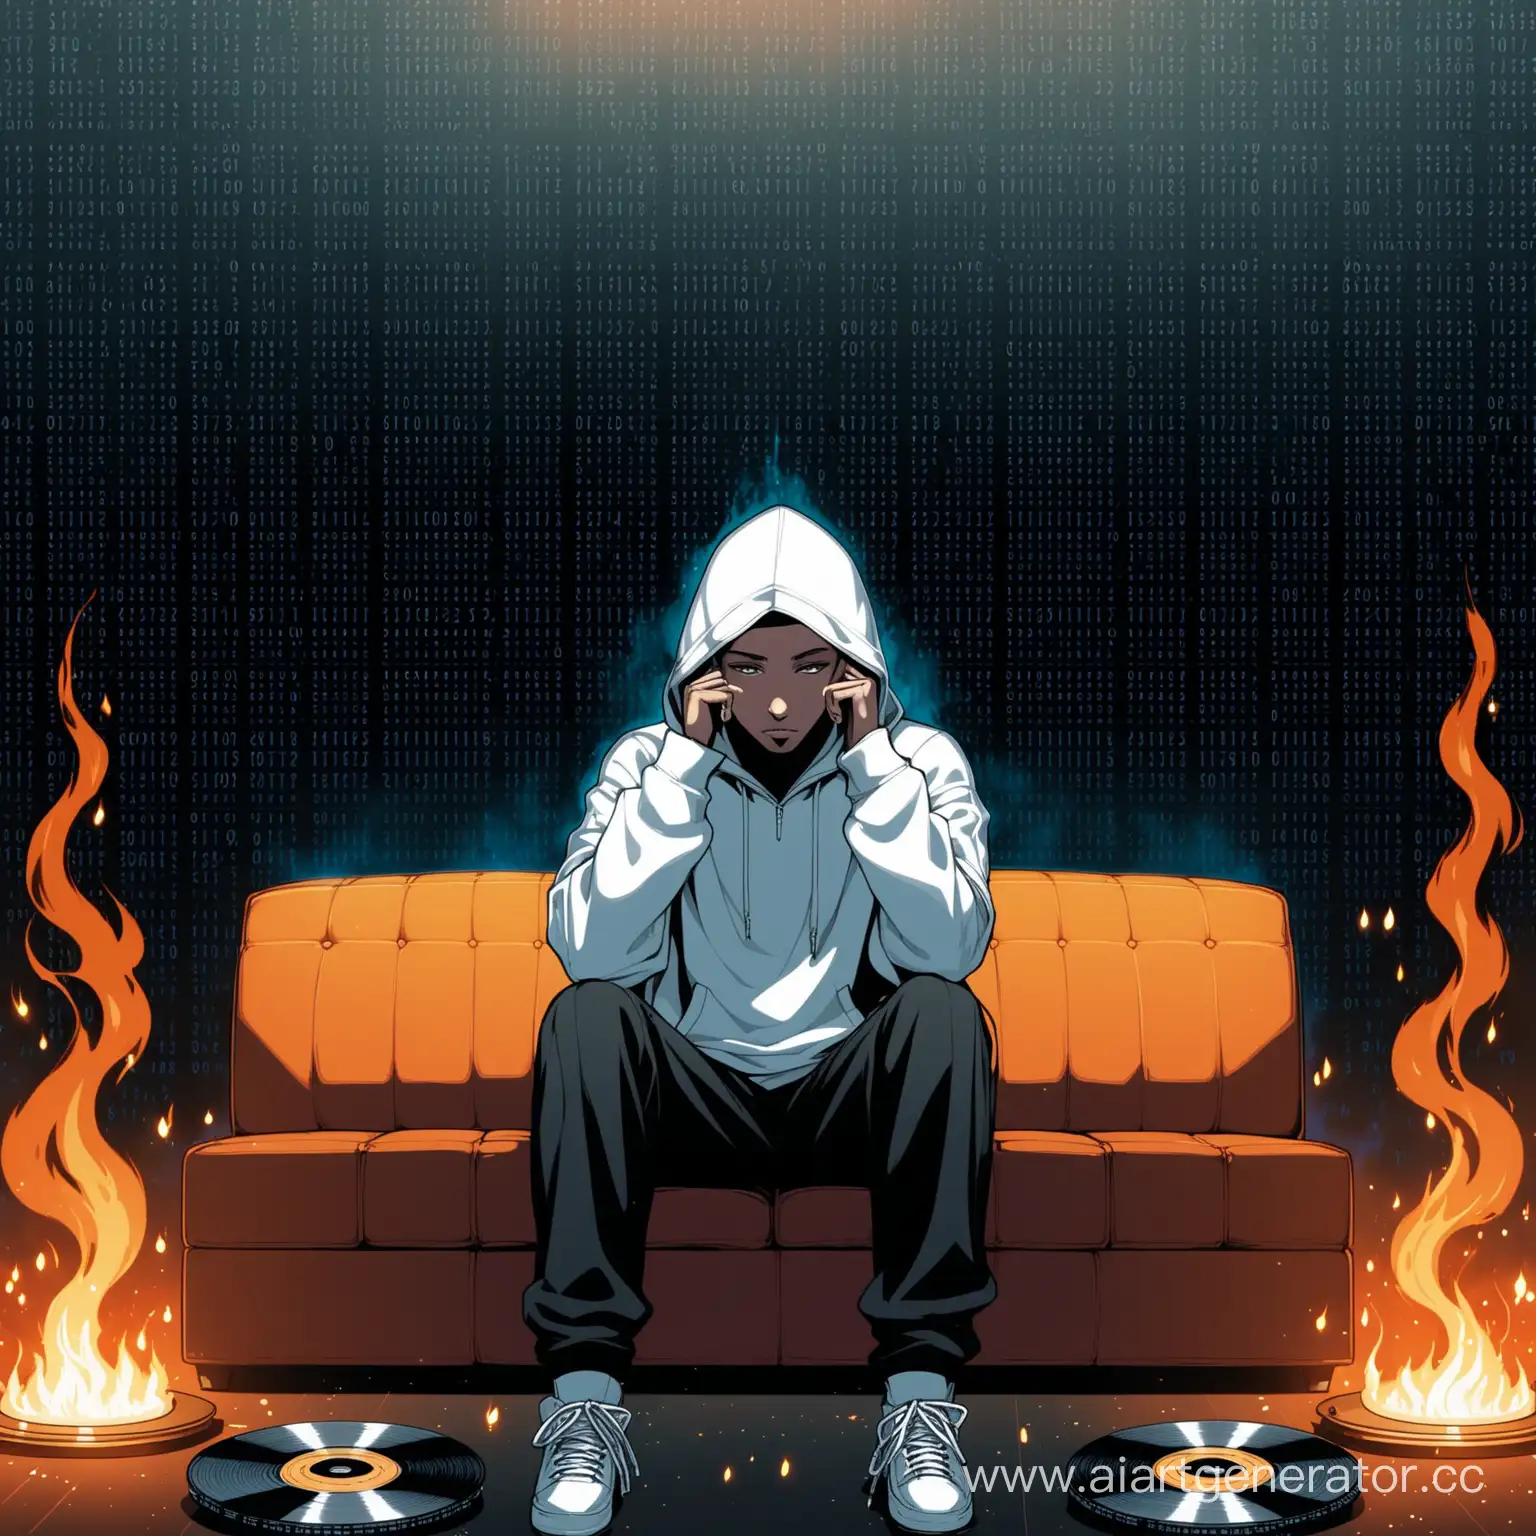 белый рэпер в капюшоне сидит на диване, на заднем фоне стены из двоичного кода, перед рэпером стоит урна с горящими дисками песен